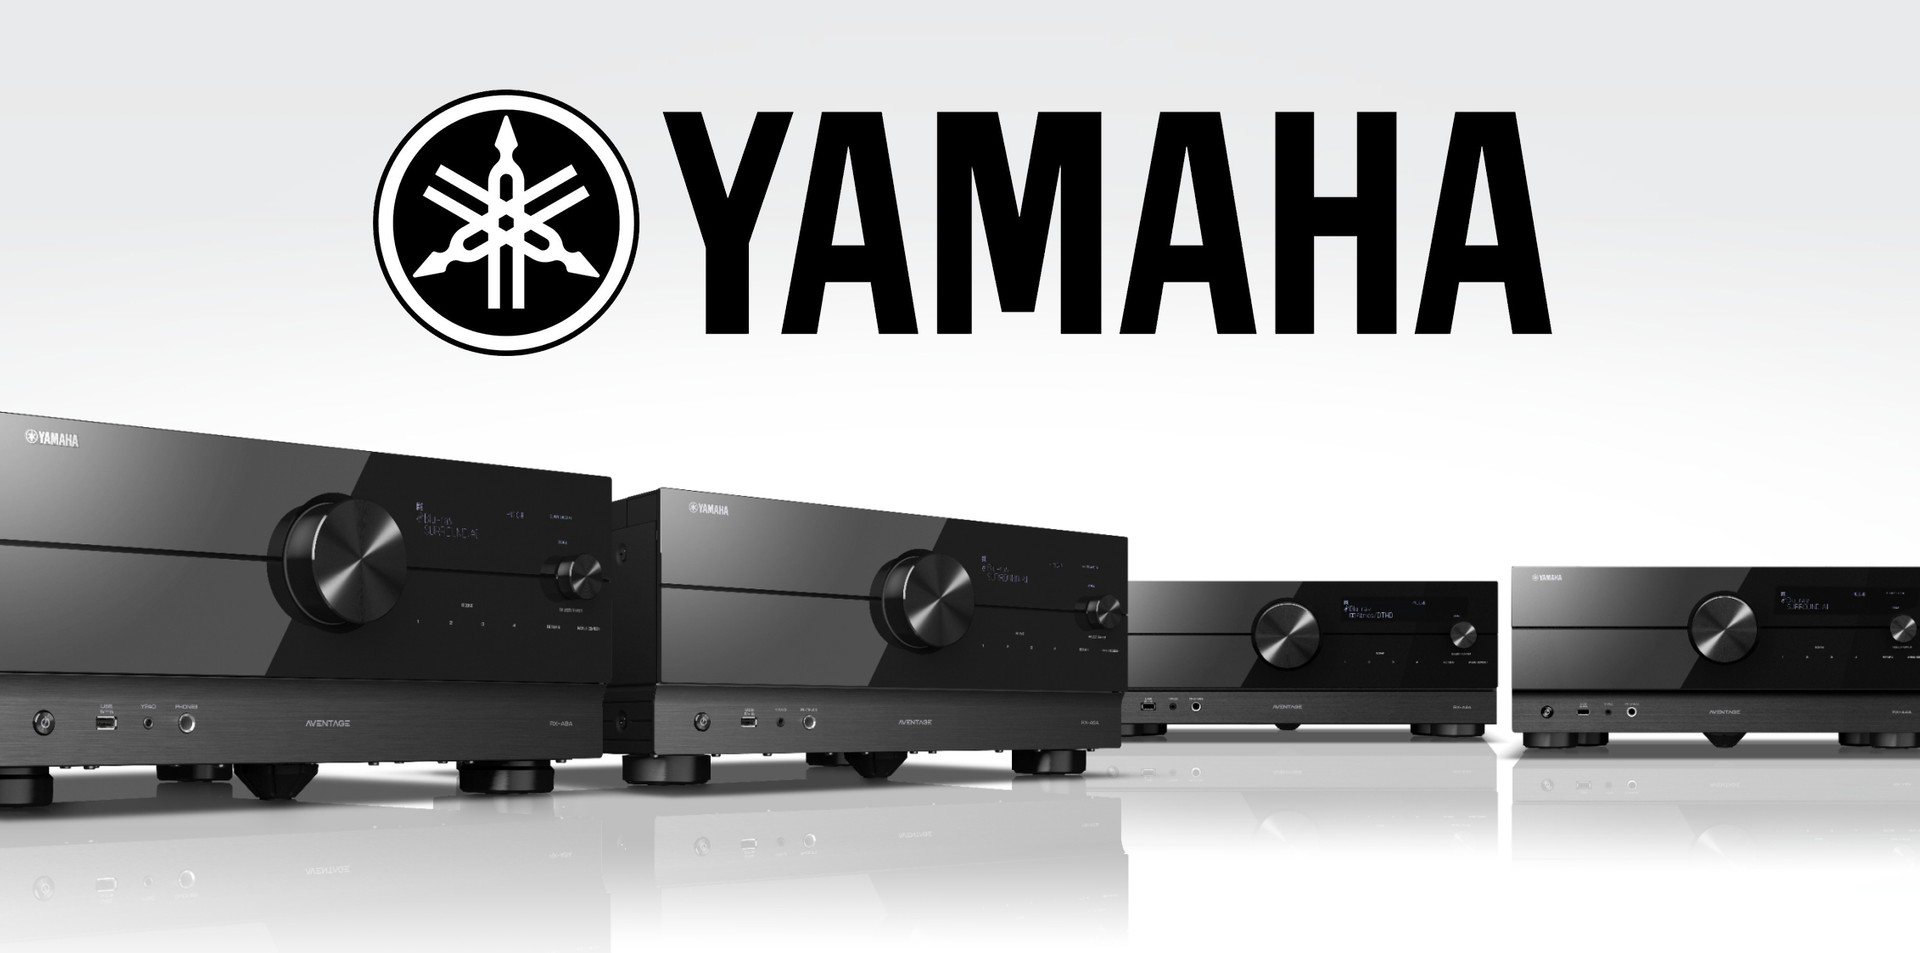 Yamaha porta il 4K a 120 Hz e HDR10+ sugli amplificatori home cinema Aventage